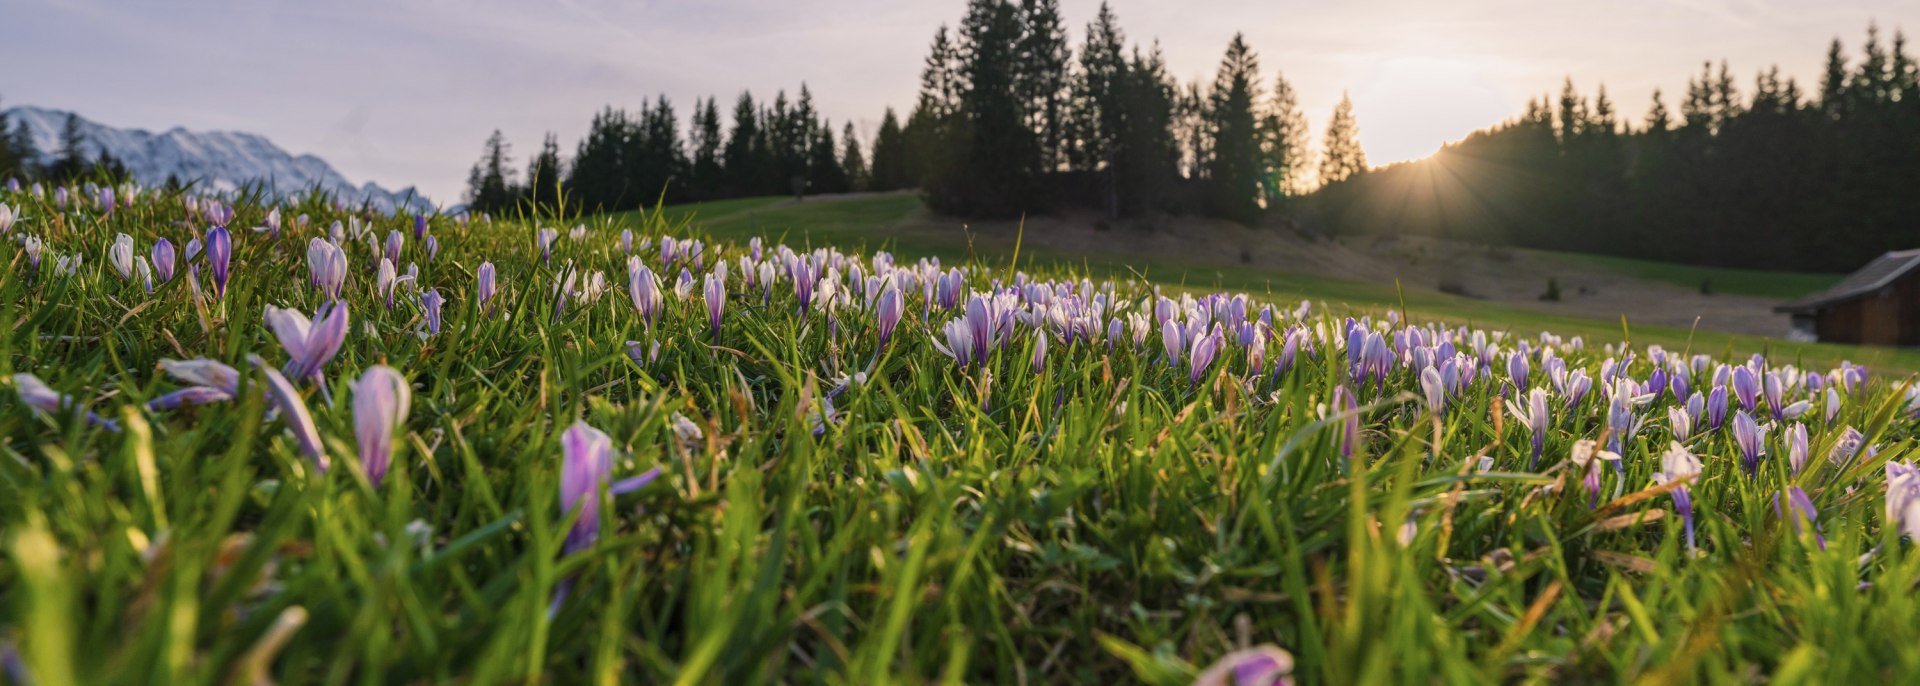 Frühling in der Alpenwelt Karwendel: Blütenpracht rund um Mittenwald, Krün und Wallgau, © Alpenwelt Karwendel | Paul Wolf